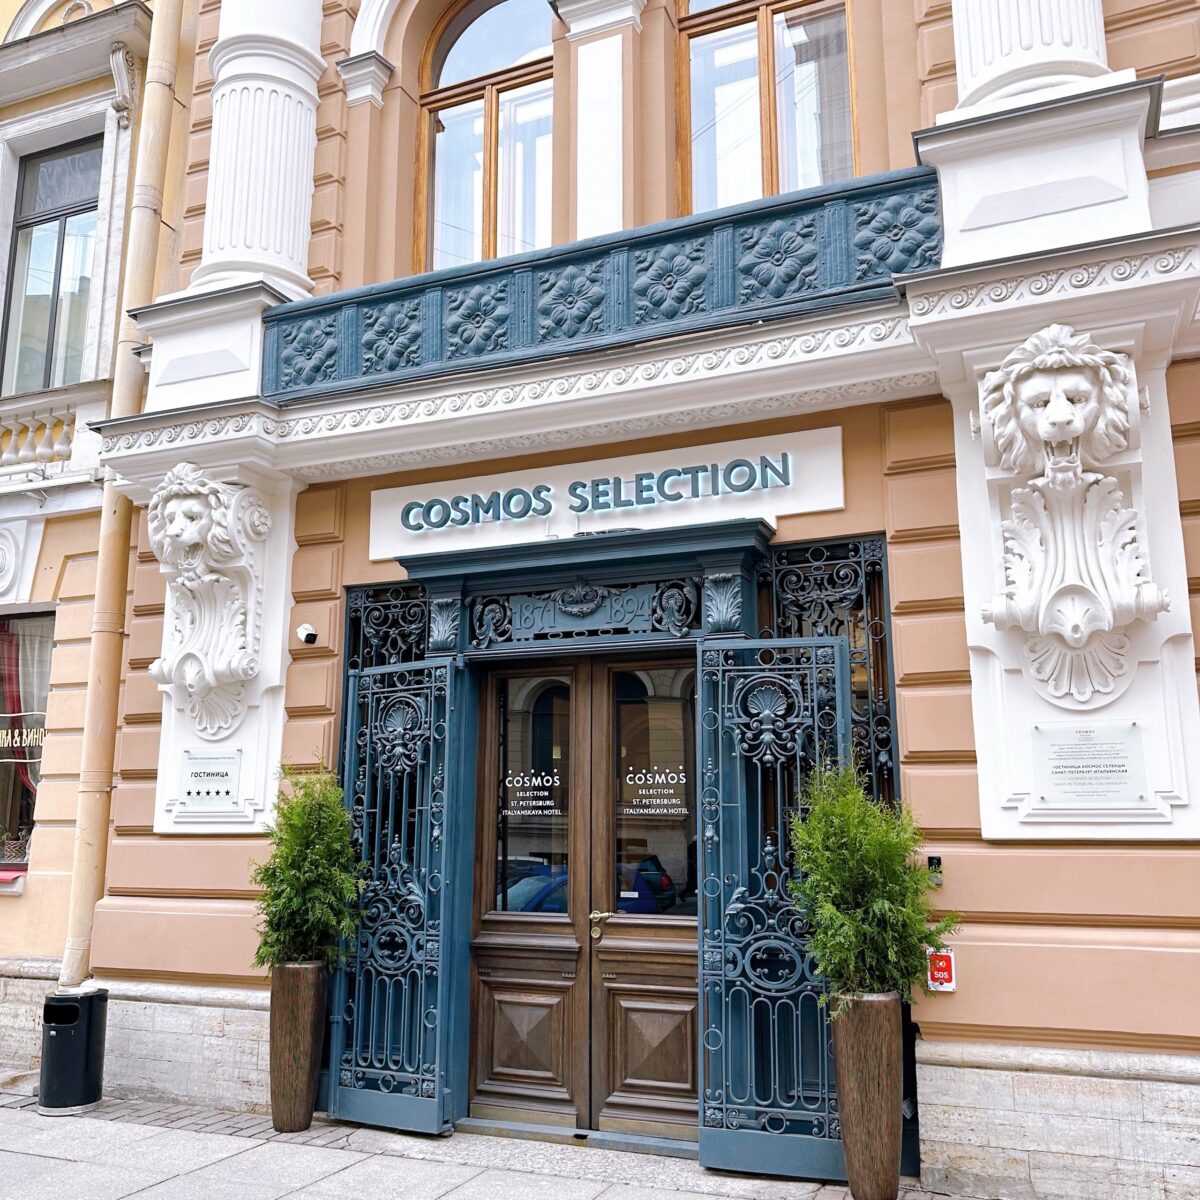 Cosmos Selection Saint-Petersburg Italyanskaya - новый роскошный бутик отель в сердце Петербурга